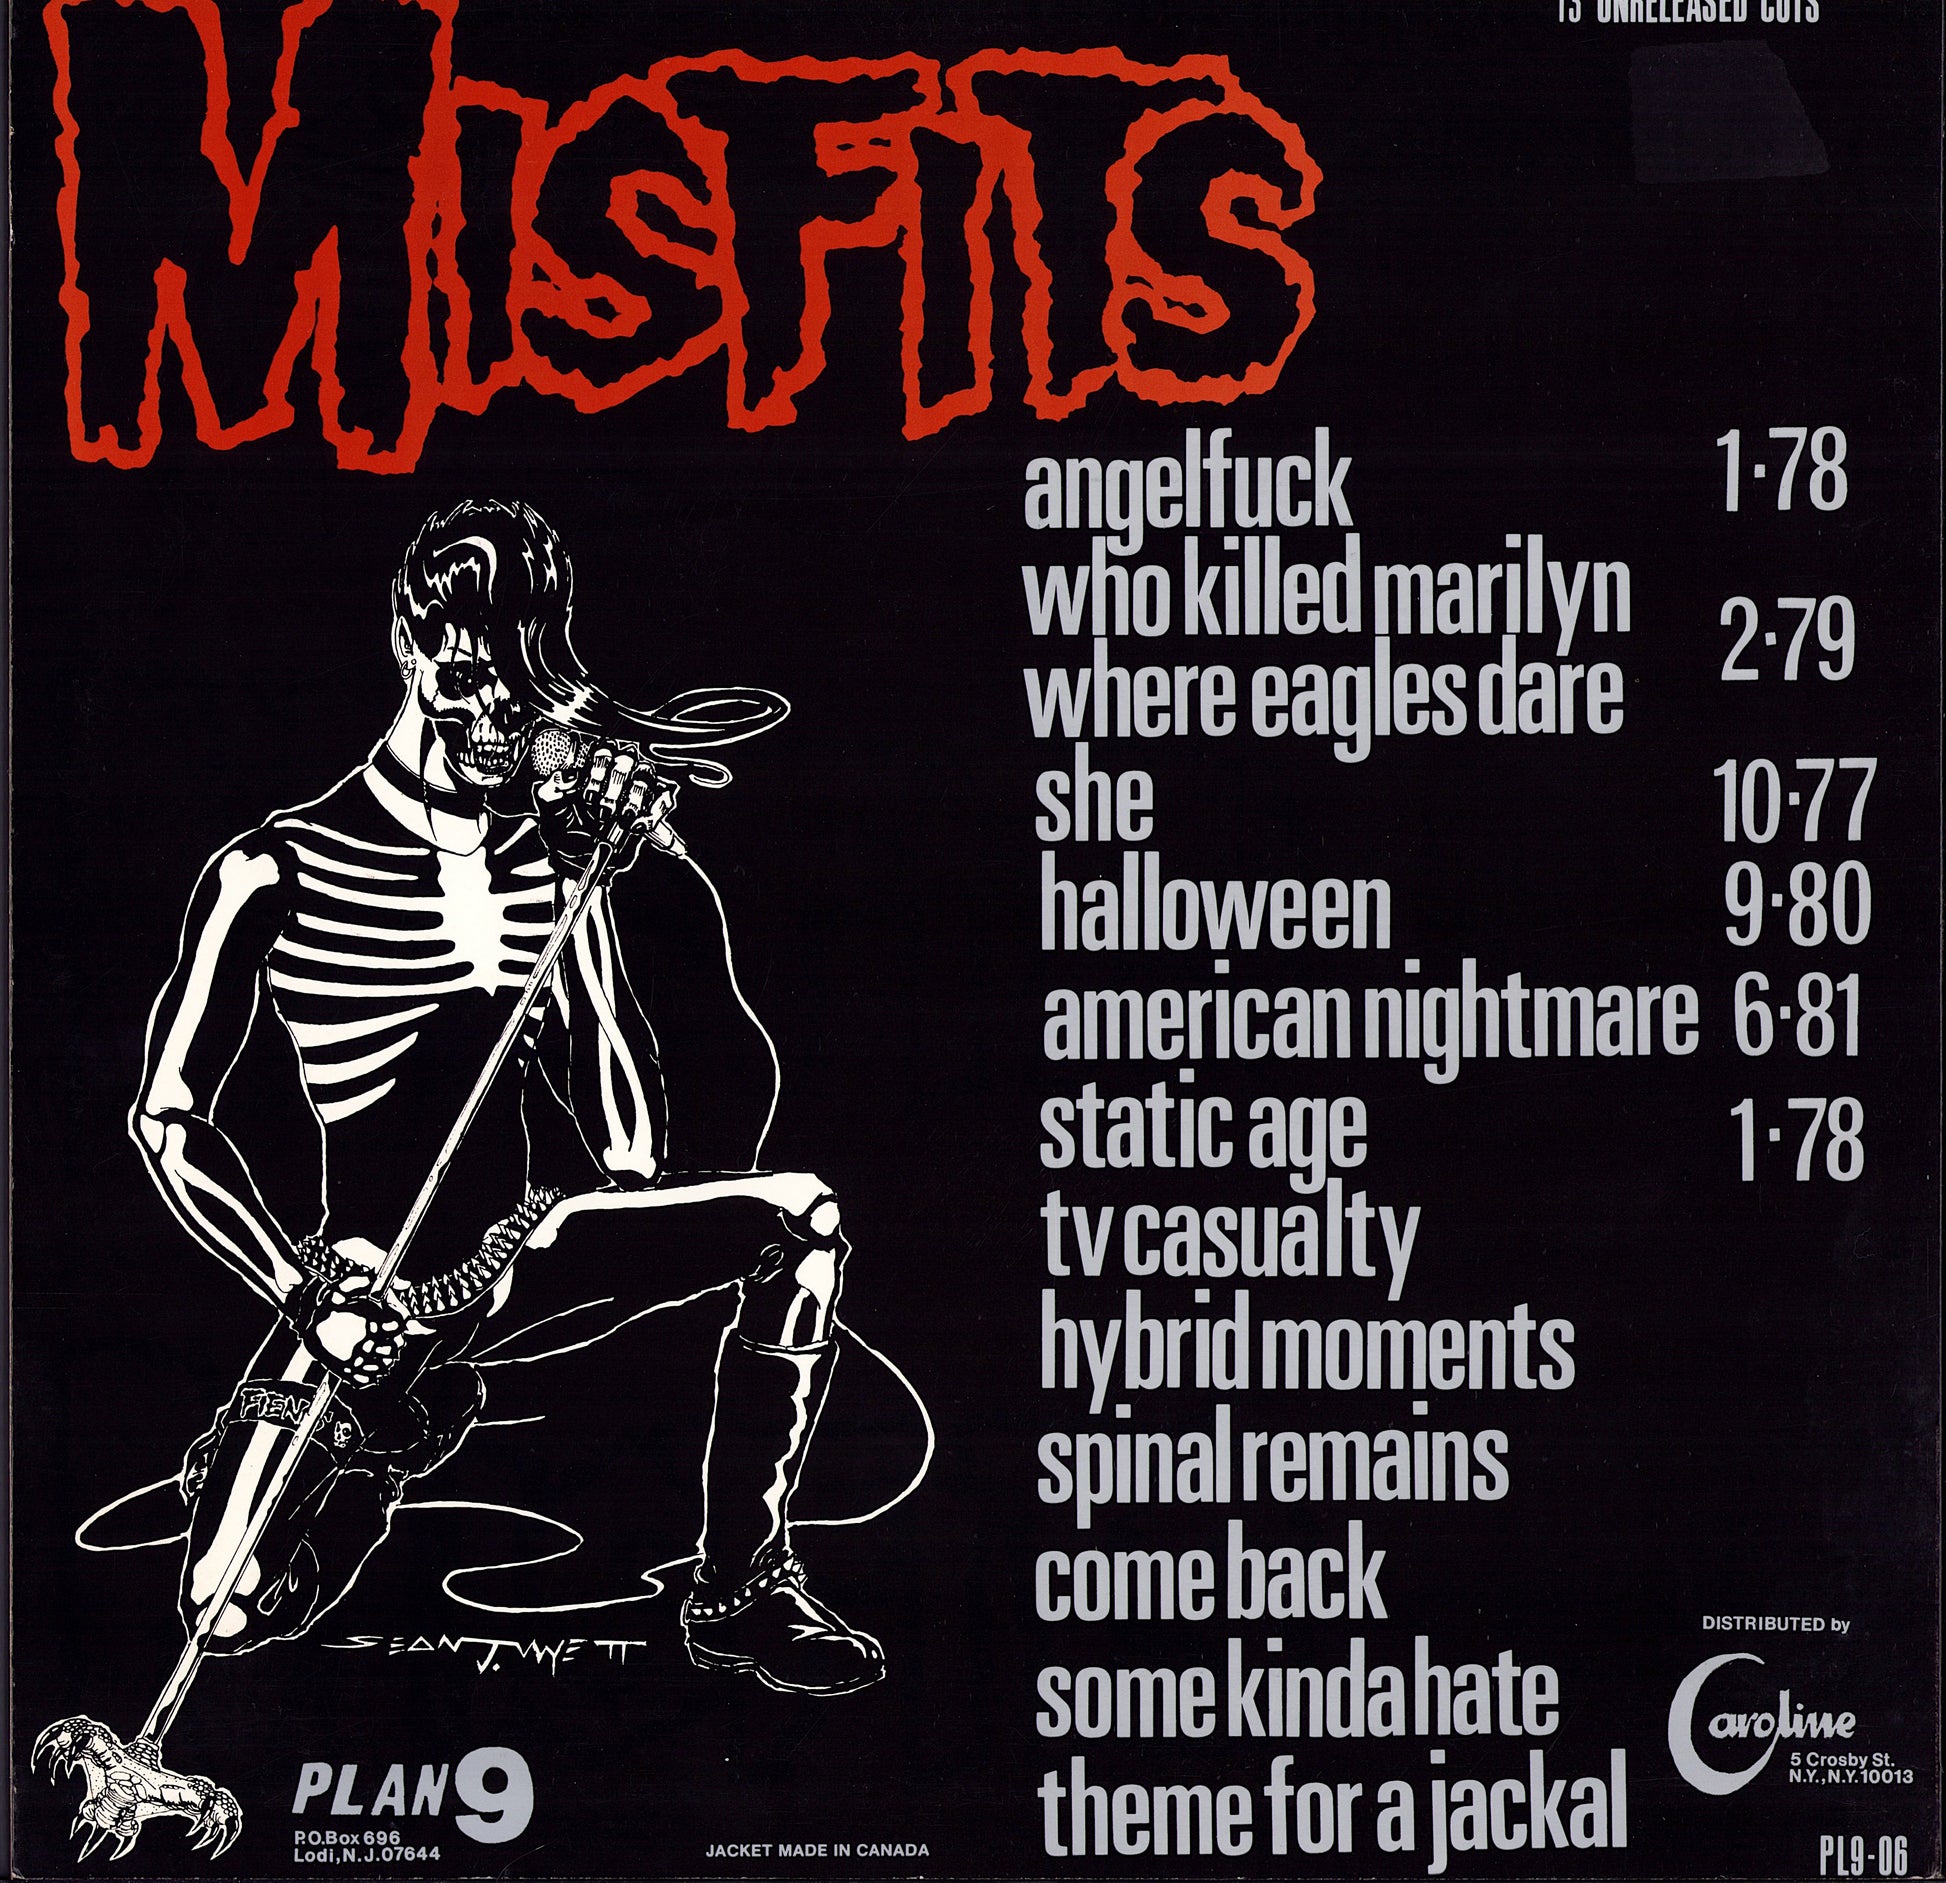 Misfits - Legacy Of Brutality Black Translucent Vinyl LP